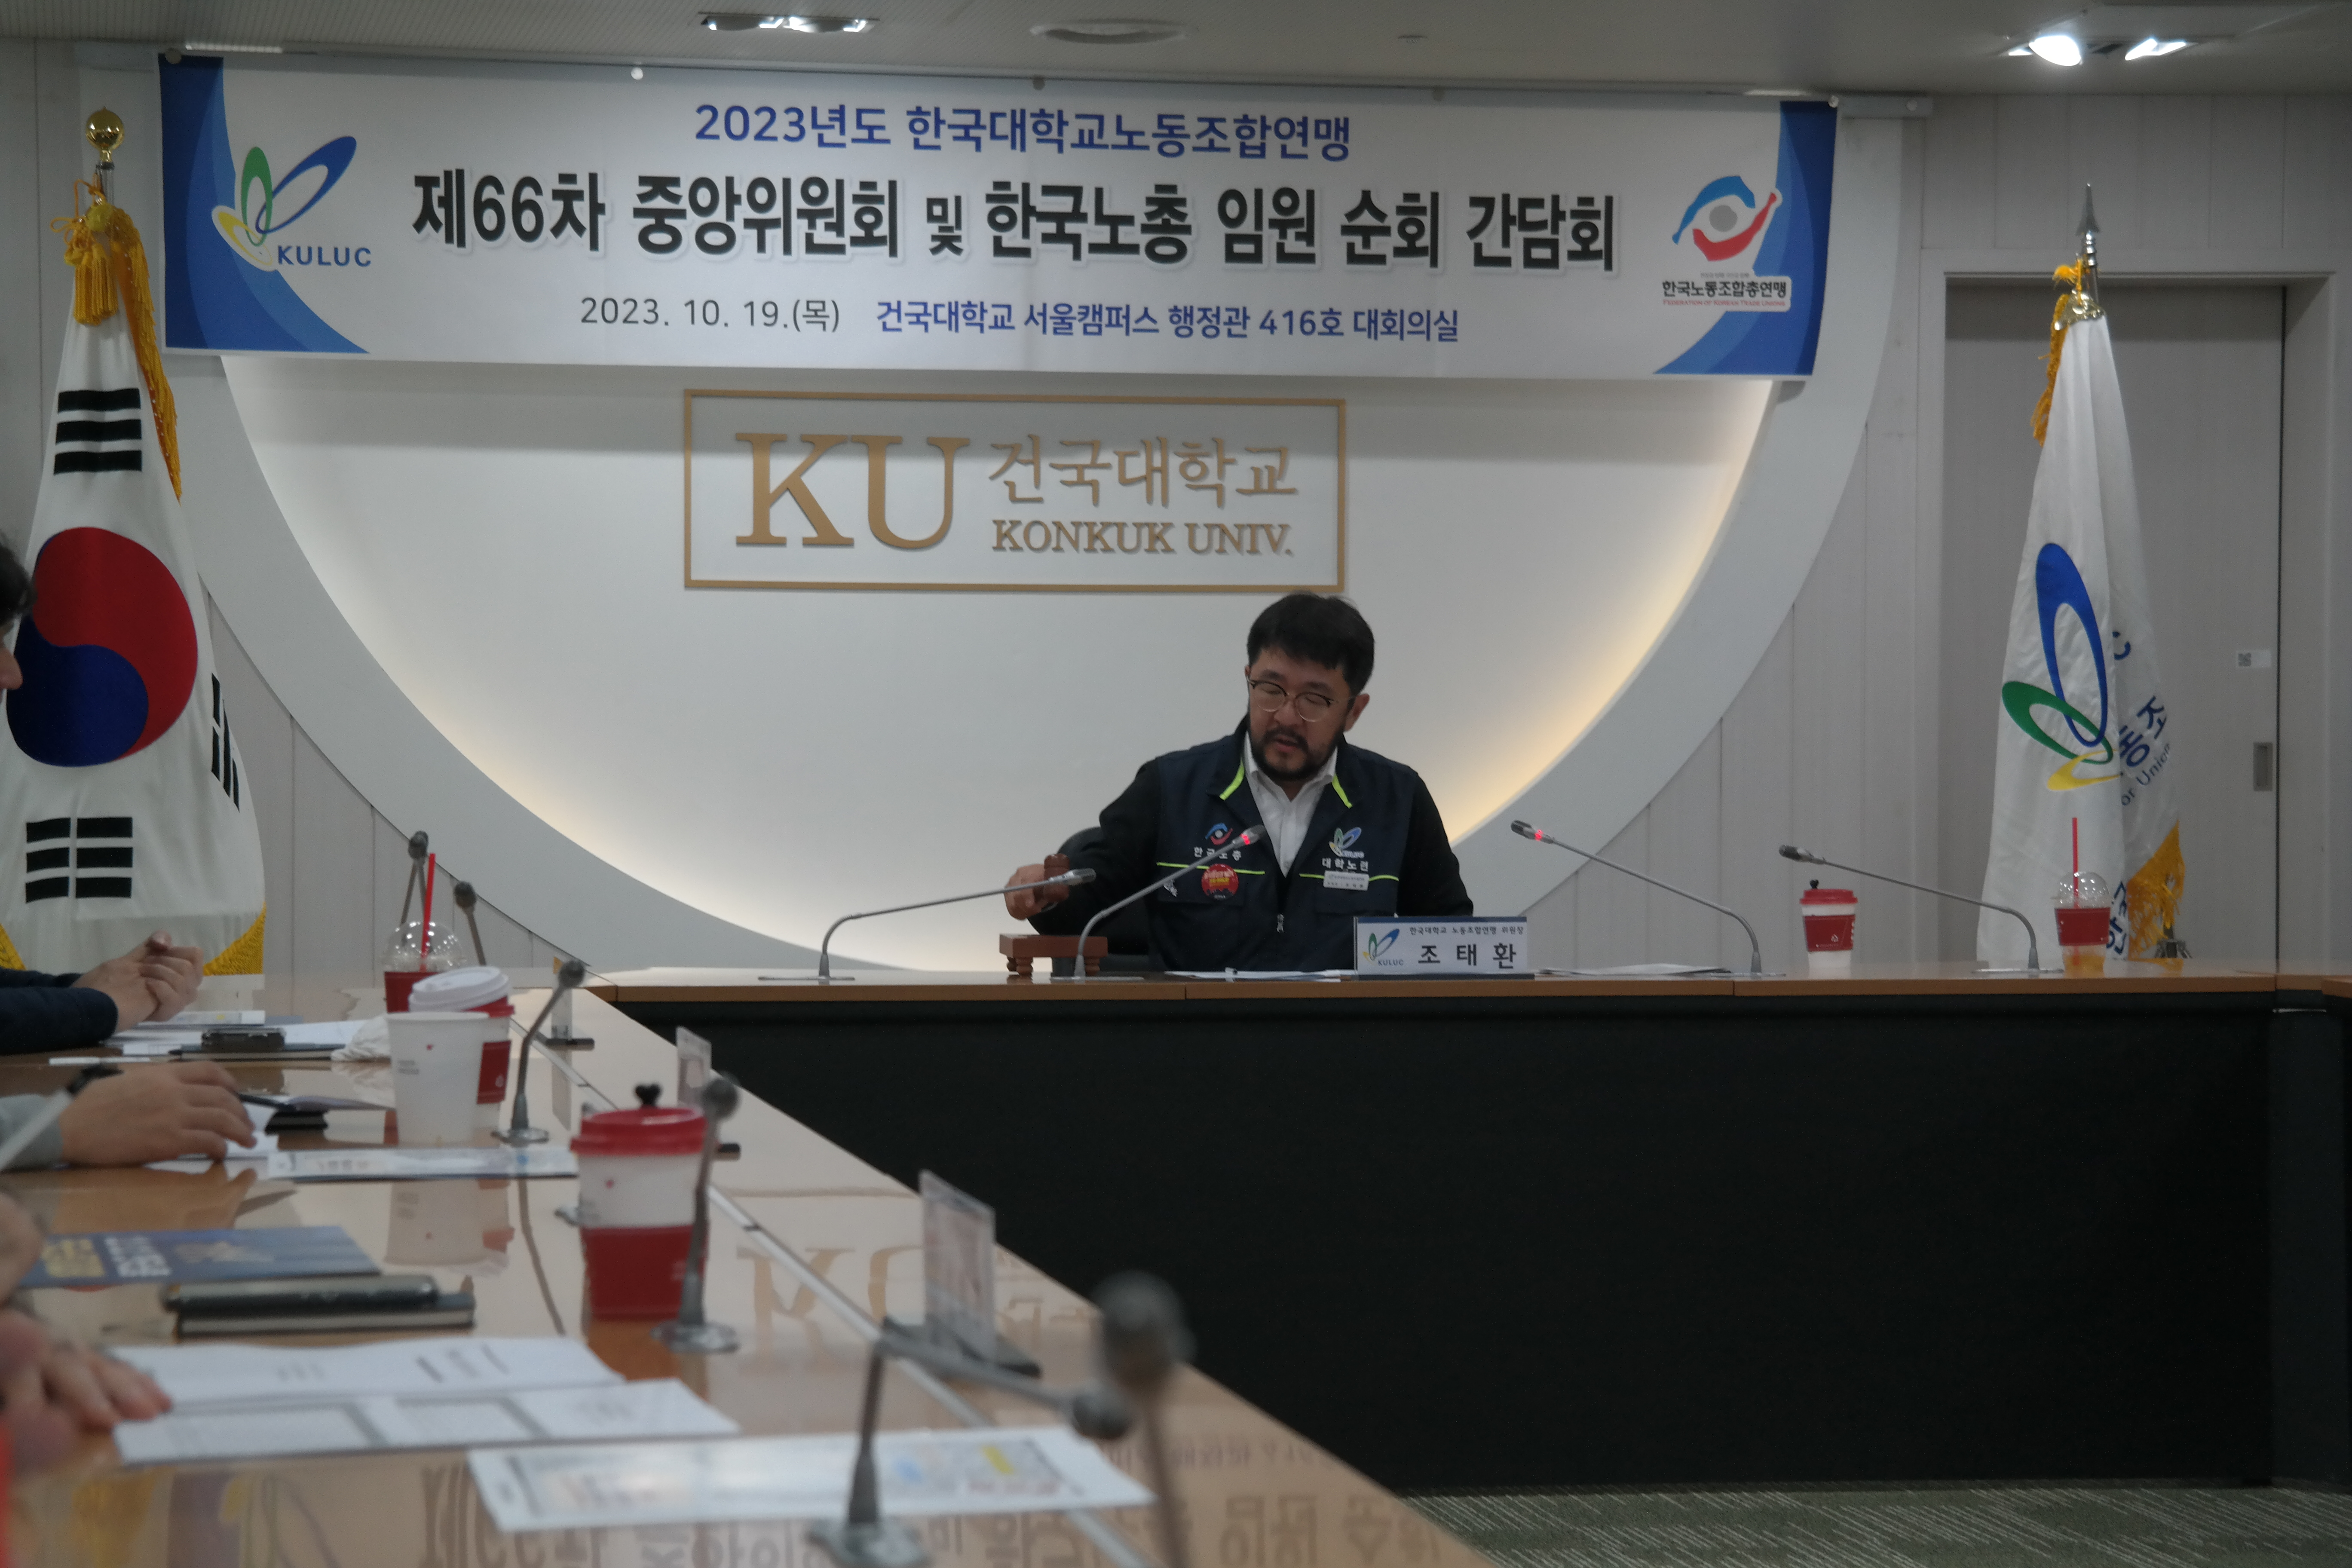 2023년도 한국대학교노동조합연맹 제66차 중앙위원회